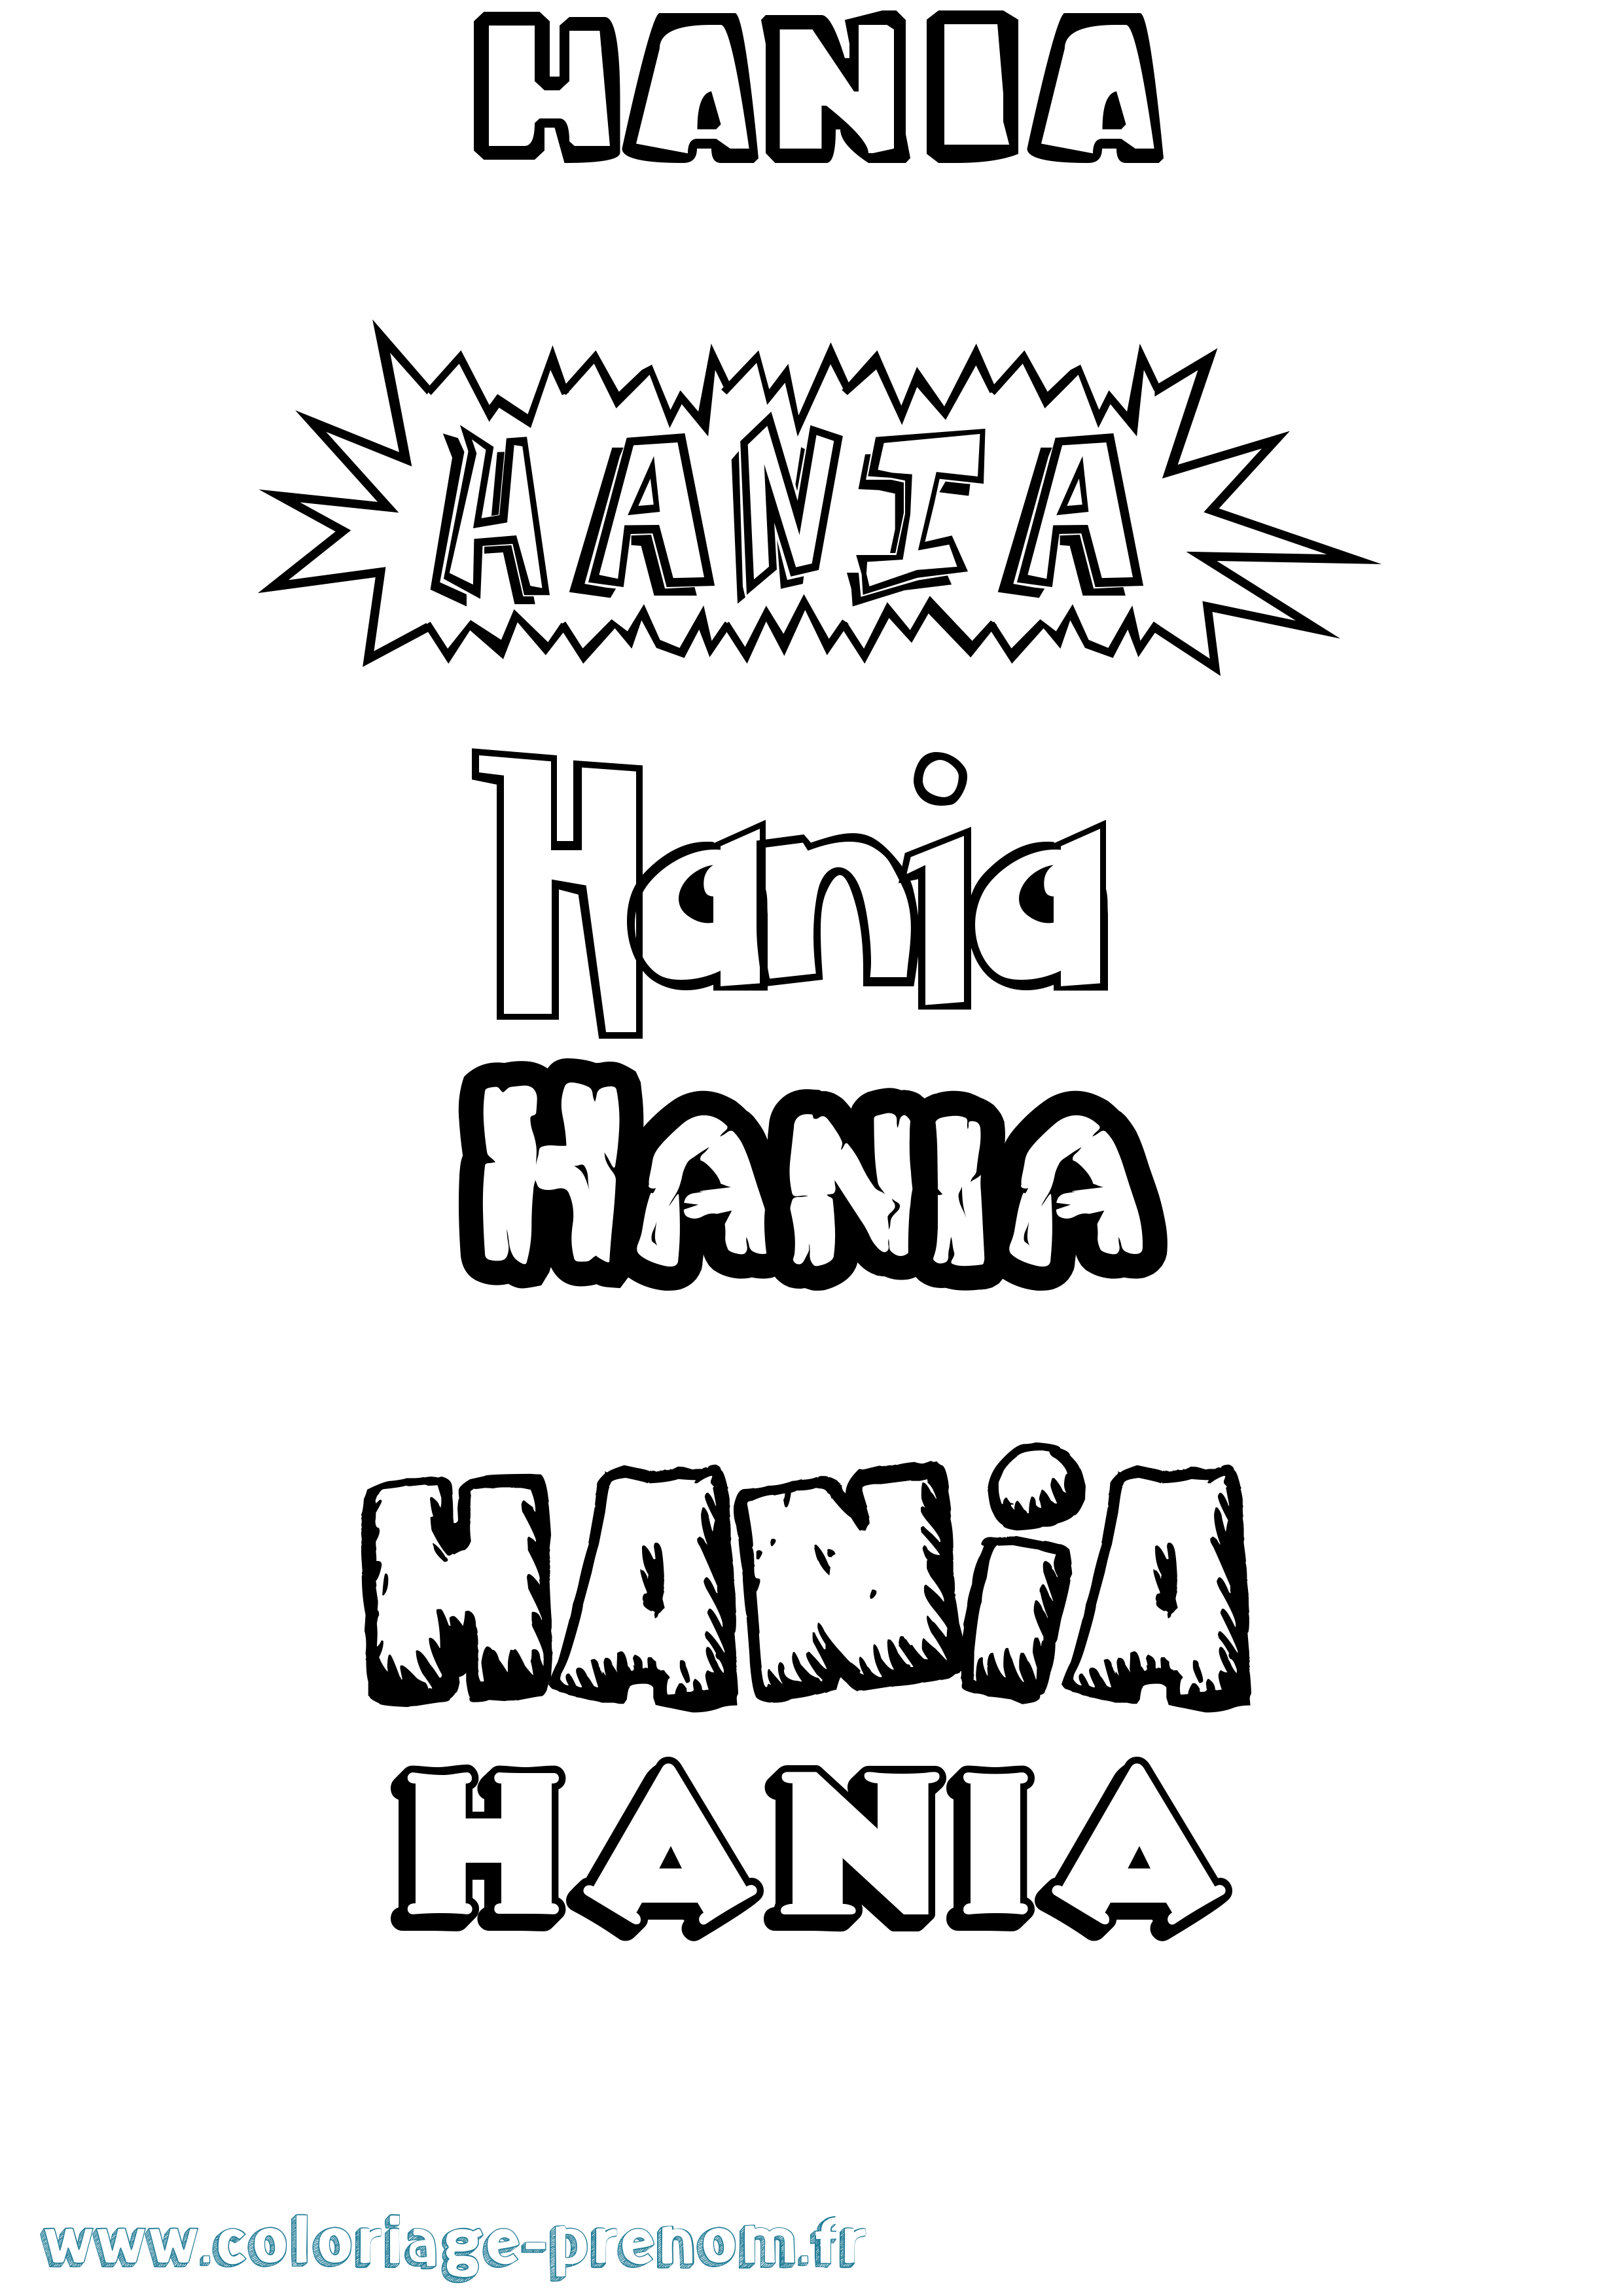 Coloriage prénom Hania